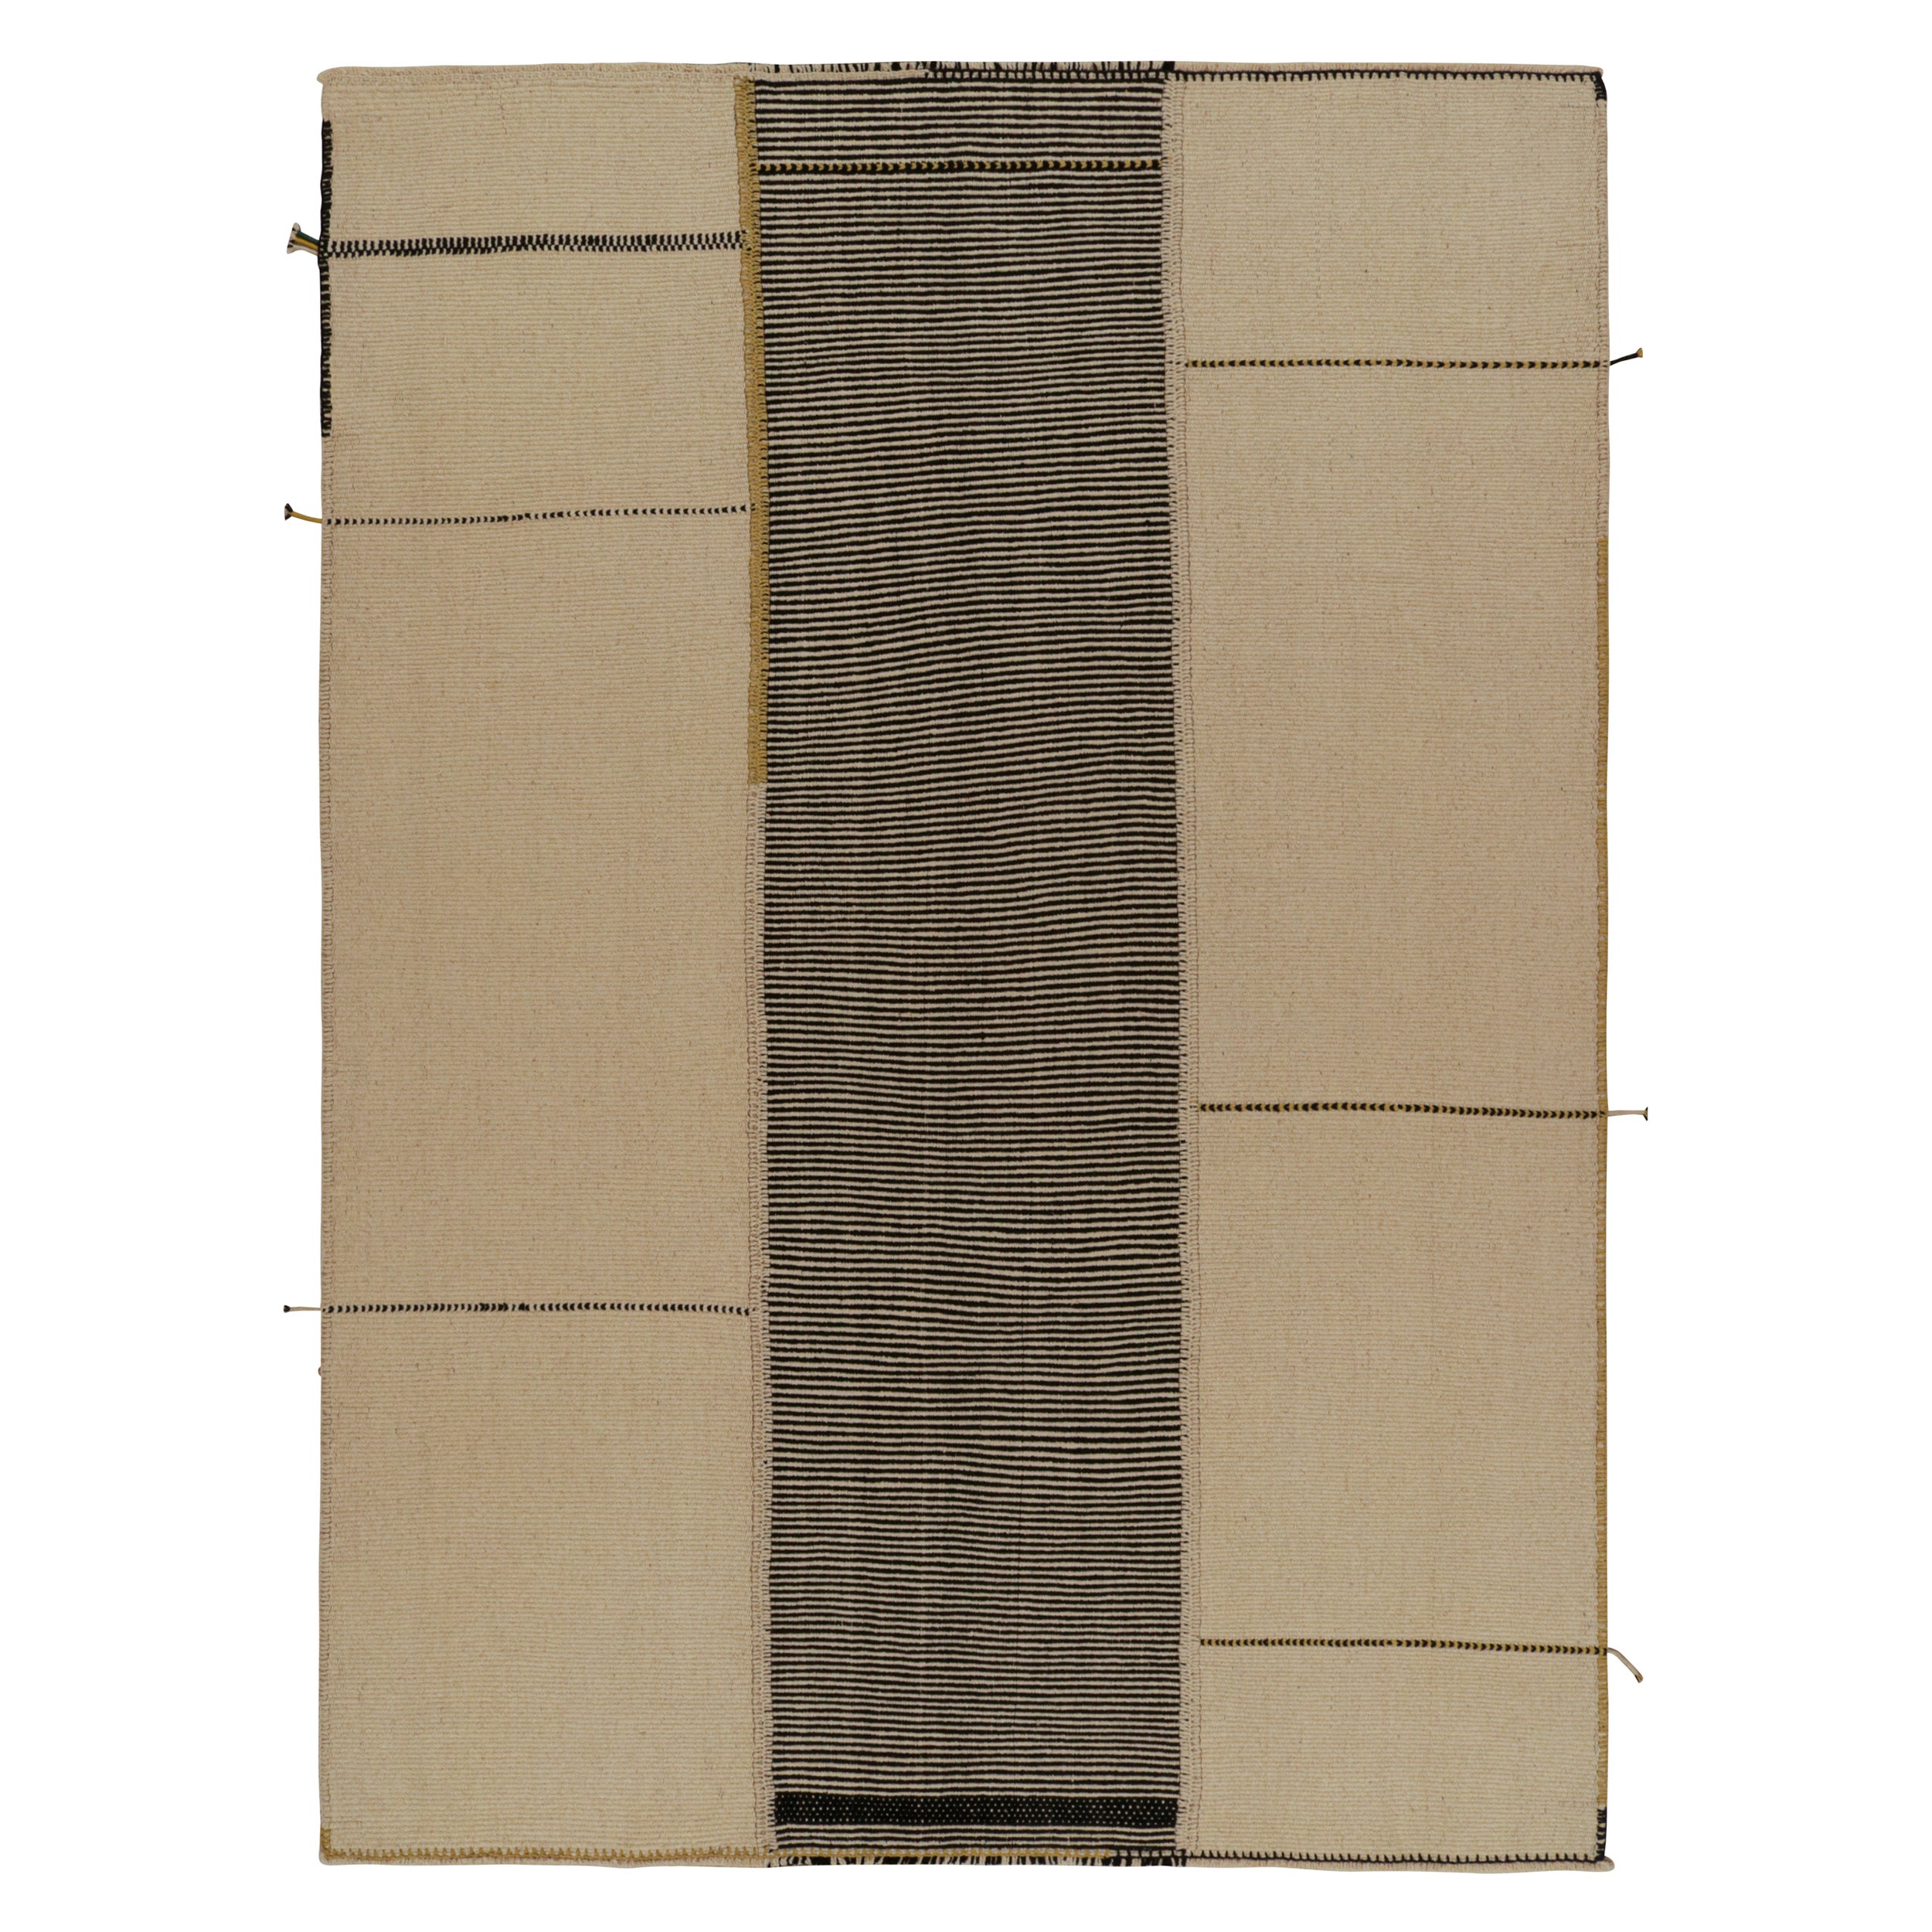 Rug & Kilim’s Modern Kilim Rug in Beige, Black & Gold Textural Stripes  For Sale